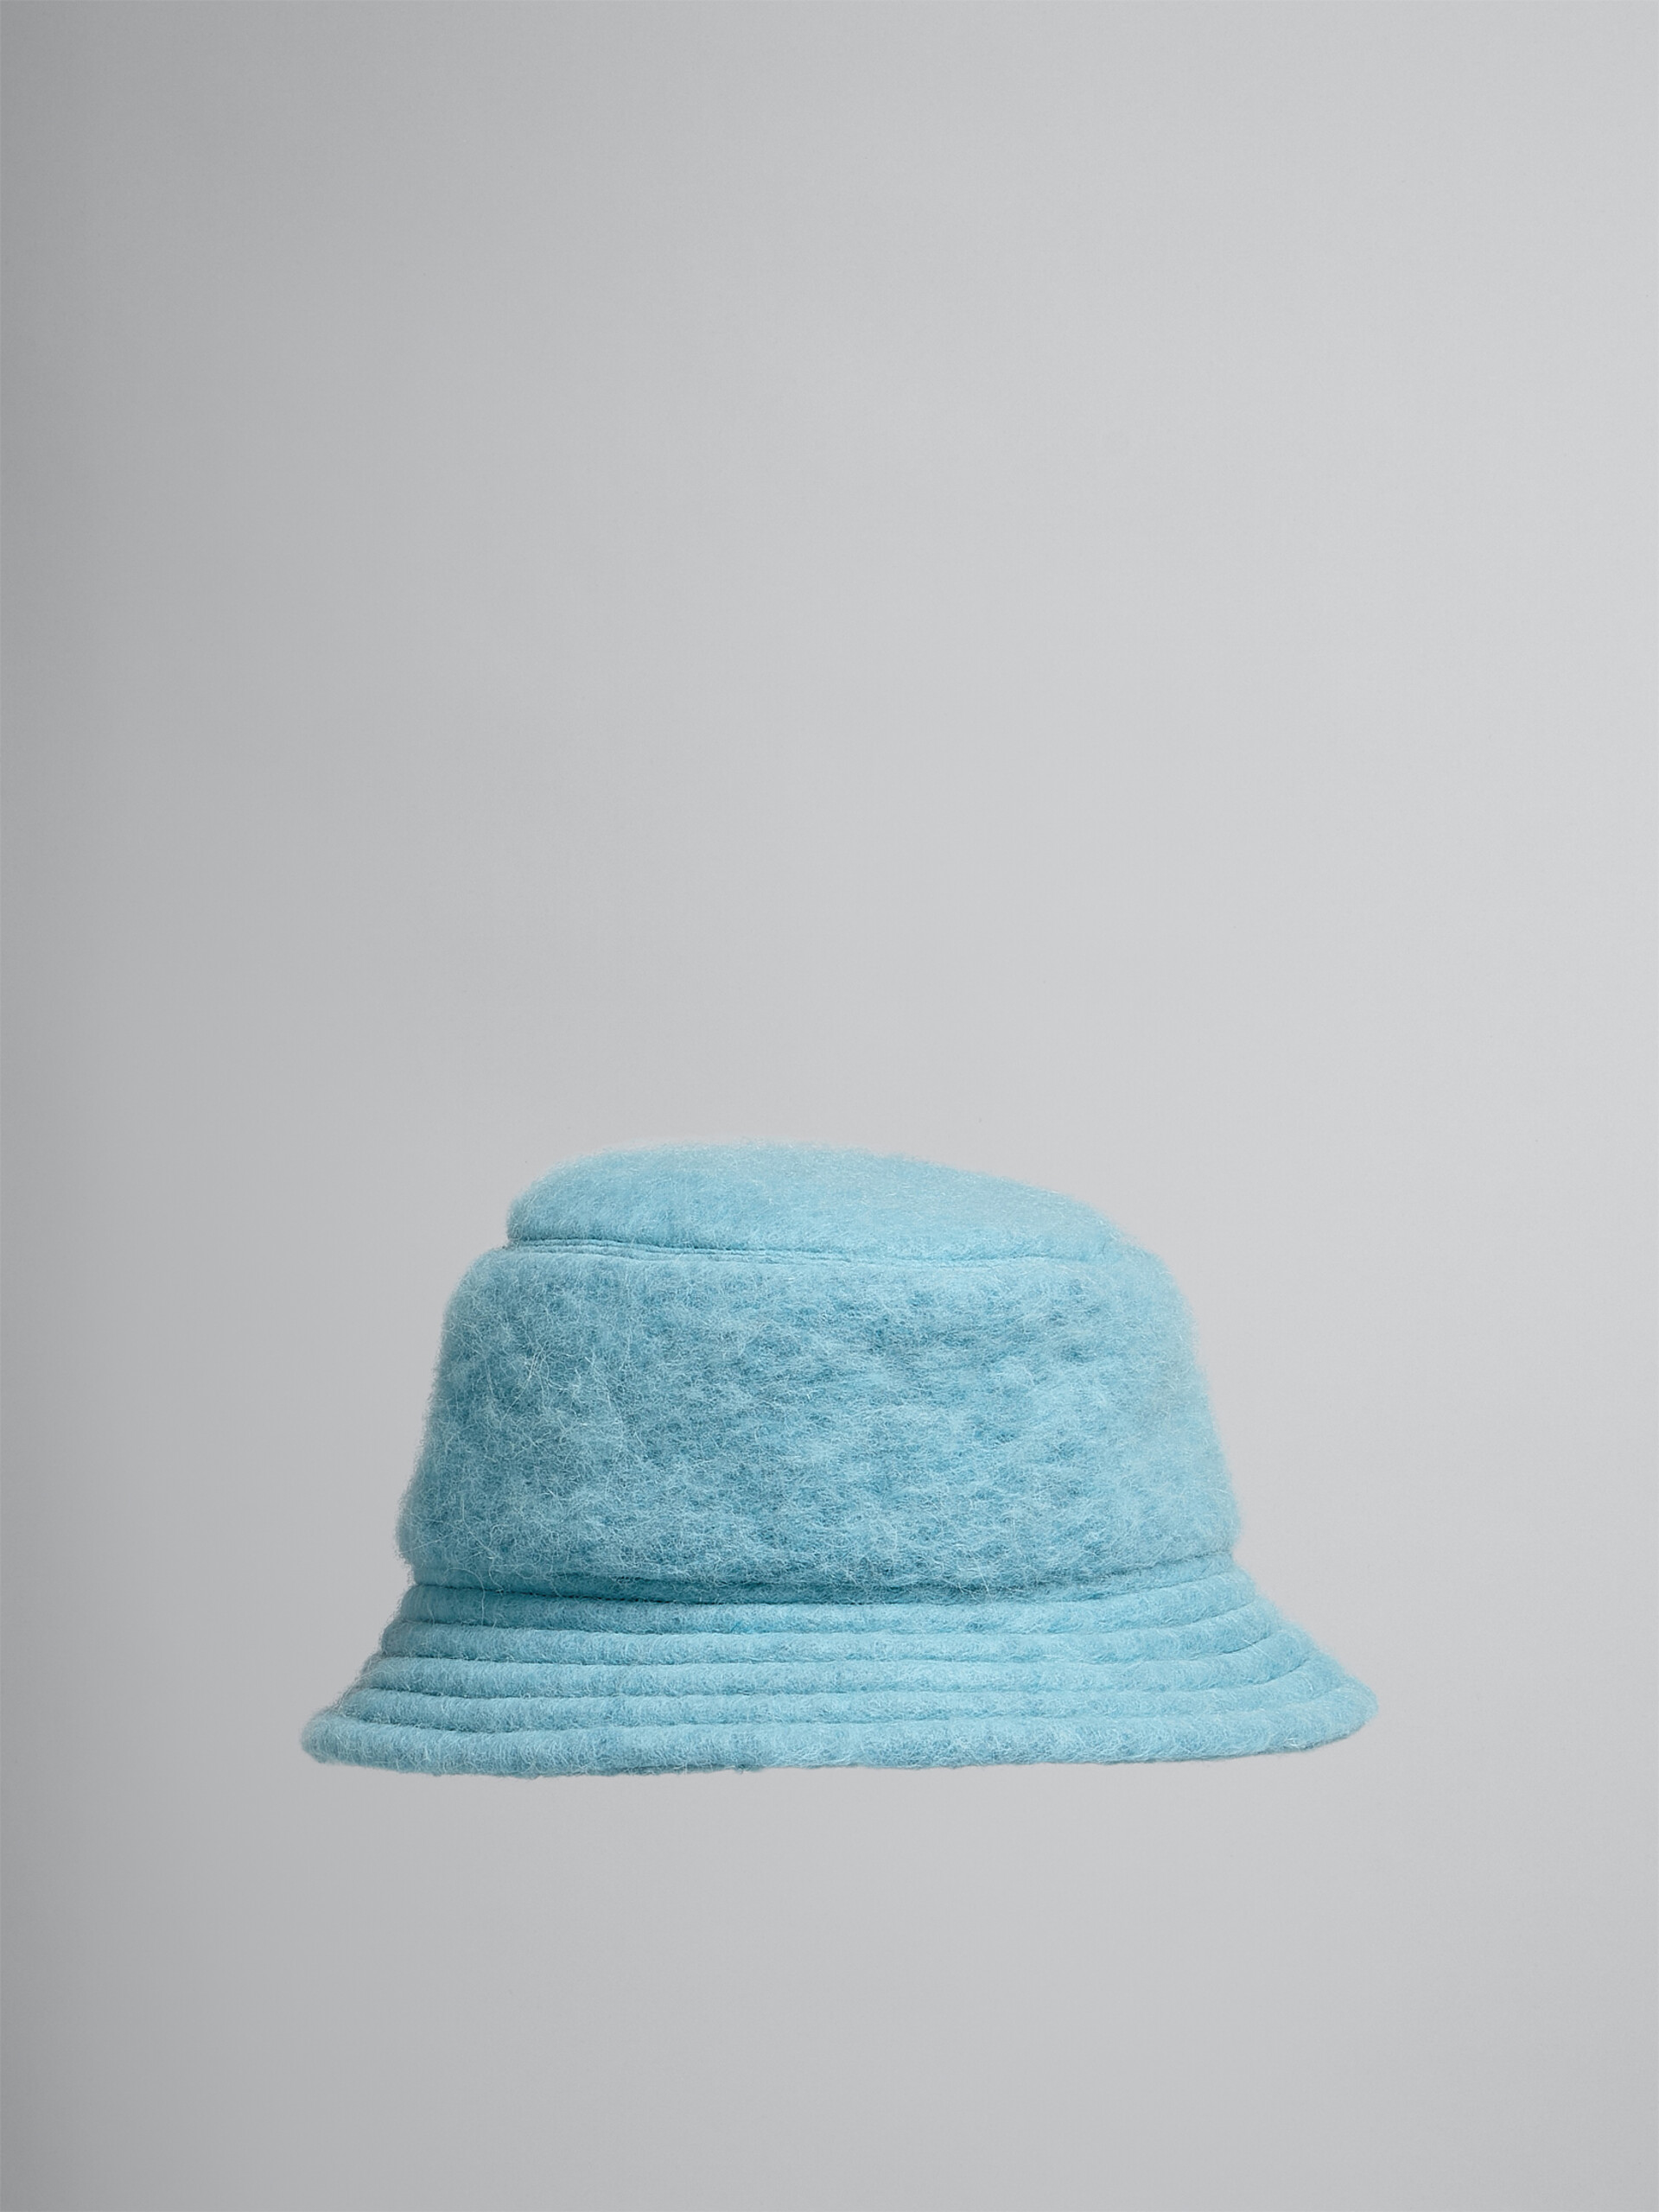 Himmelblauer Fischerhut aus gebürsteter Wollmischung - Hüte - Image 1